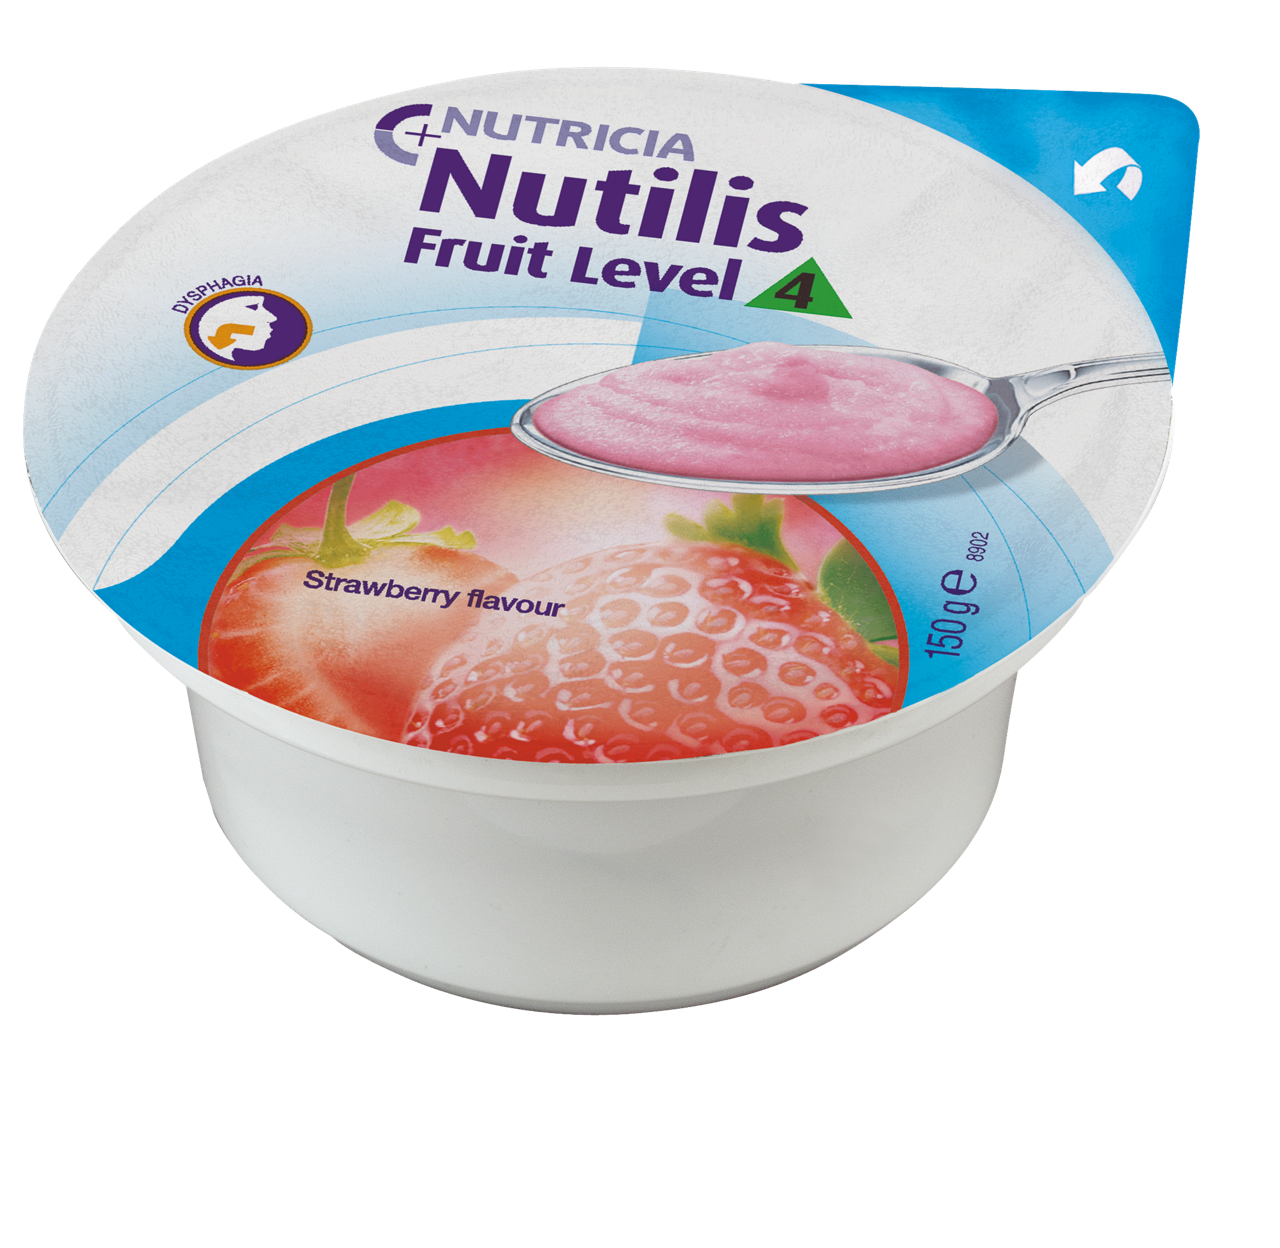 Nutilis Fruit Level 4